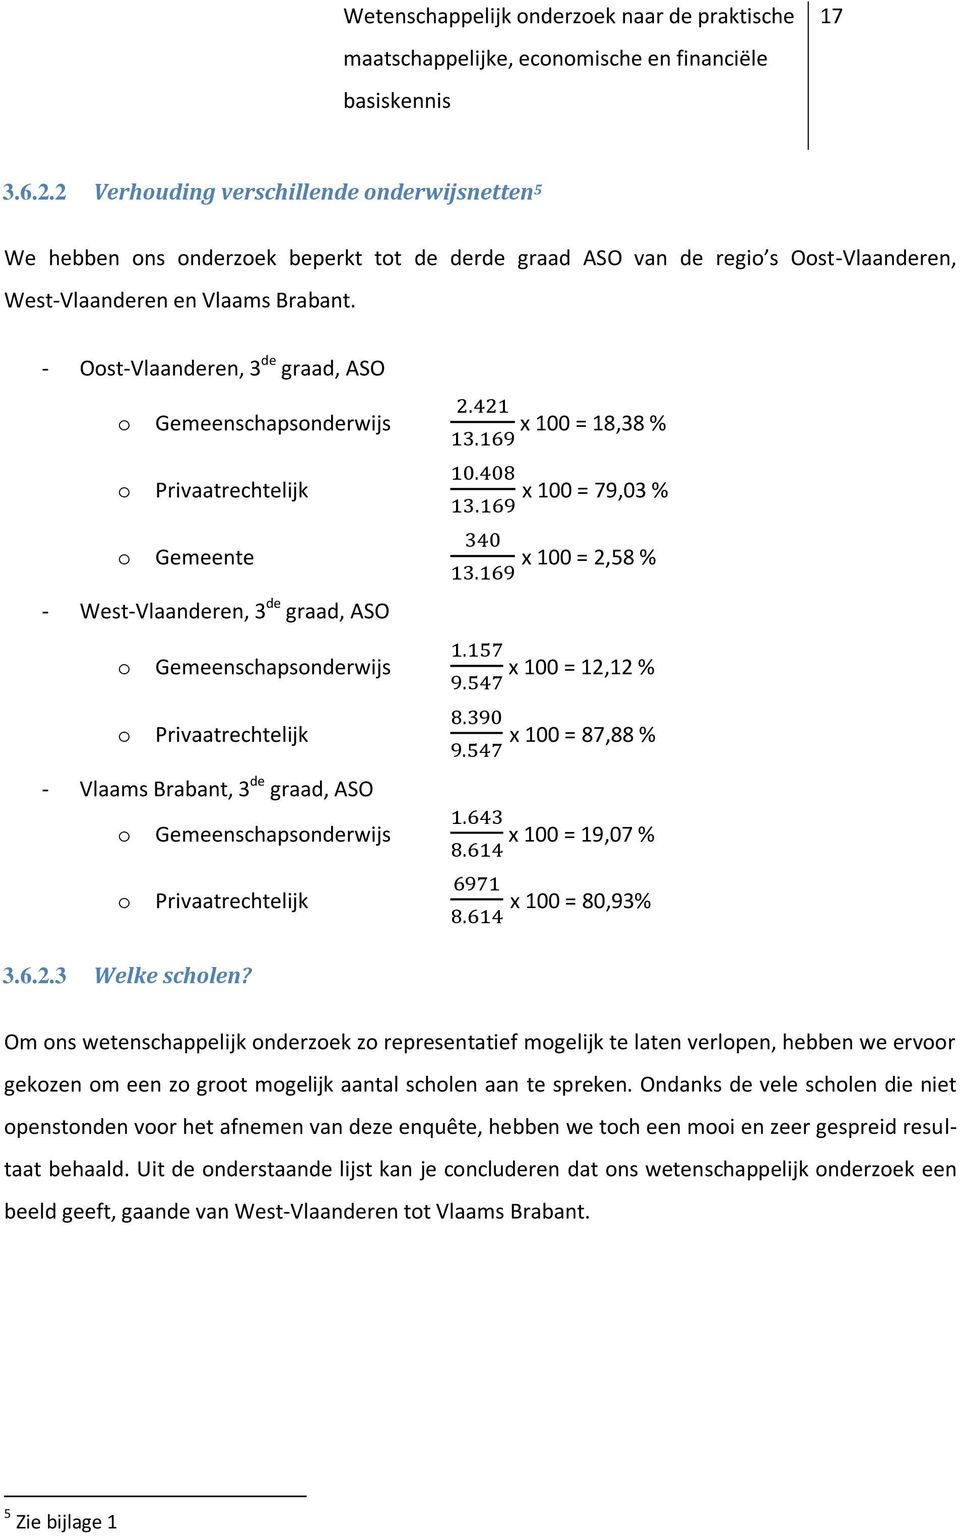 100 = 12,12 % o Privaatrechtelijk x 100 = 87,88 % - Vlaams Brabant, 3 de graad, ASO o Gemeenschapsonderwijs x 100 = 19,07 % o Privaatrechtelijk x 100 = 80,93% 3.6.2.3 Welke scholen?